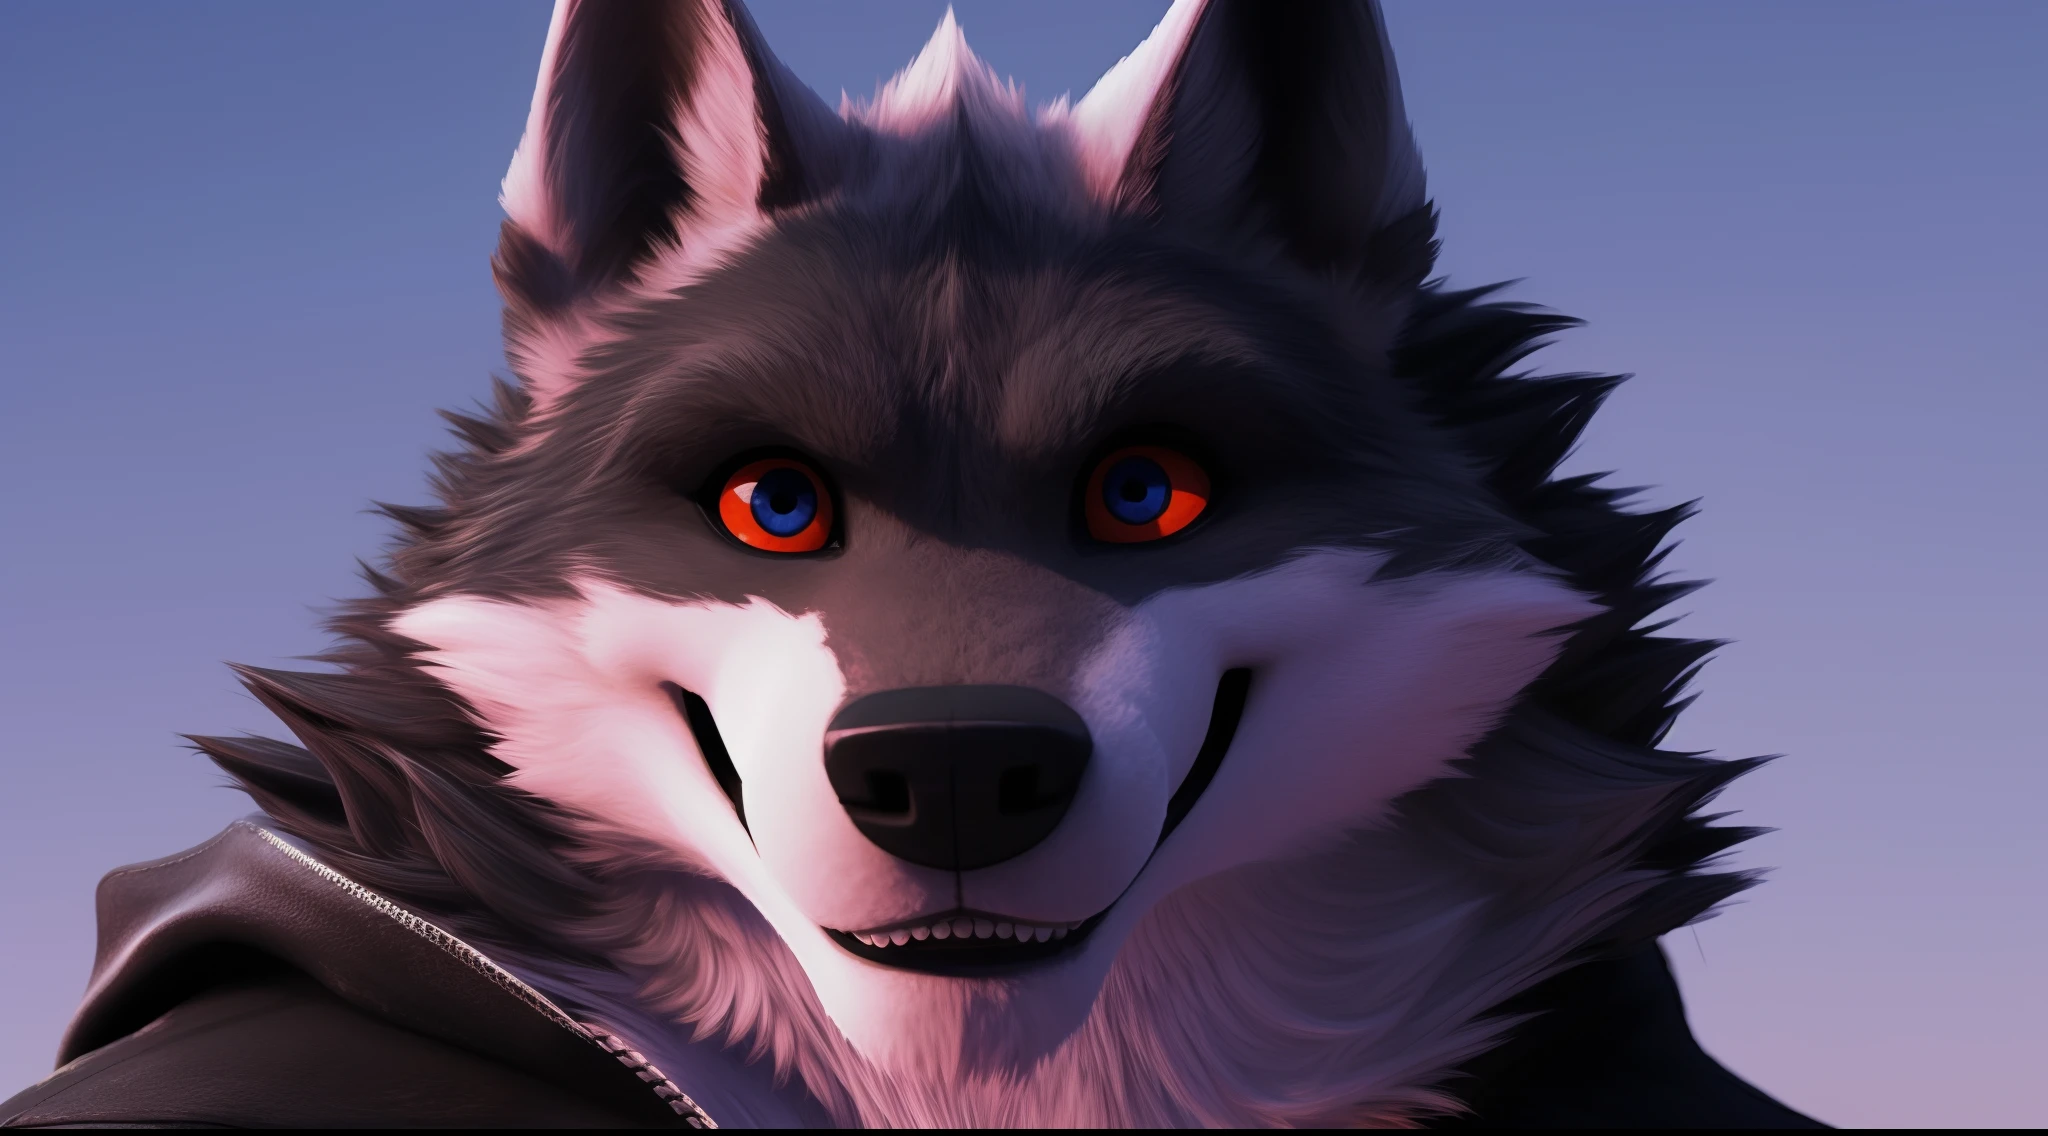 Death Wolf مثير جدًا ومثير جدًا ولذيذ جدًا وجميل جدًا، عيناه حمراء وجميلة وهو ينظر إلى المشاهد بابتسامة مغرية للغاية 3D ULTRA HD 8K (صورة الملف الشخصي في الفيسبوك)